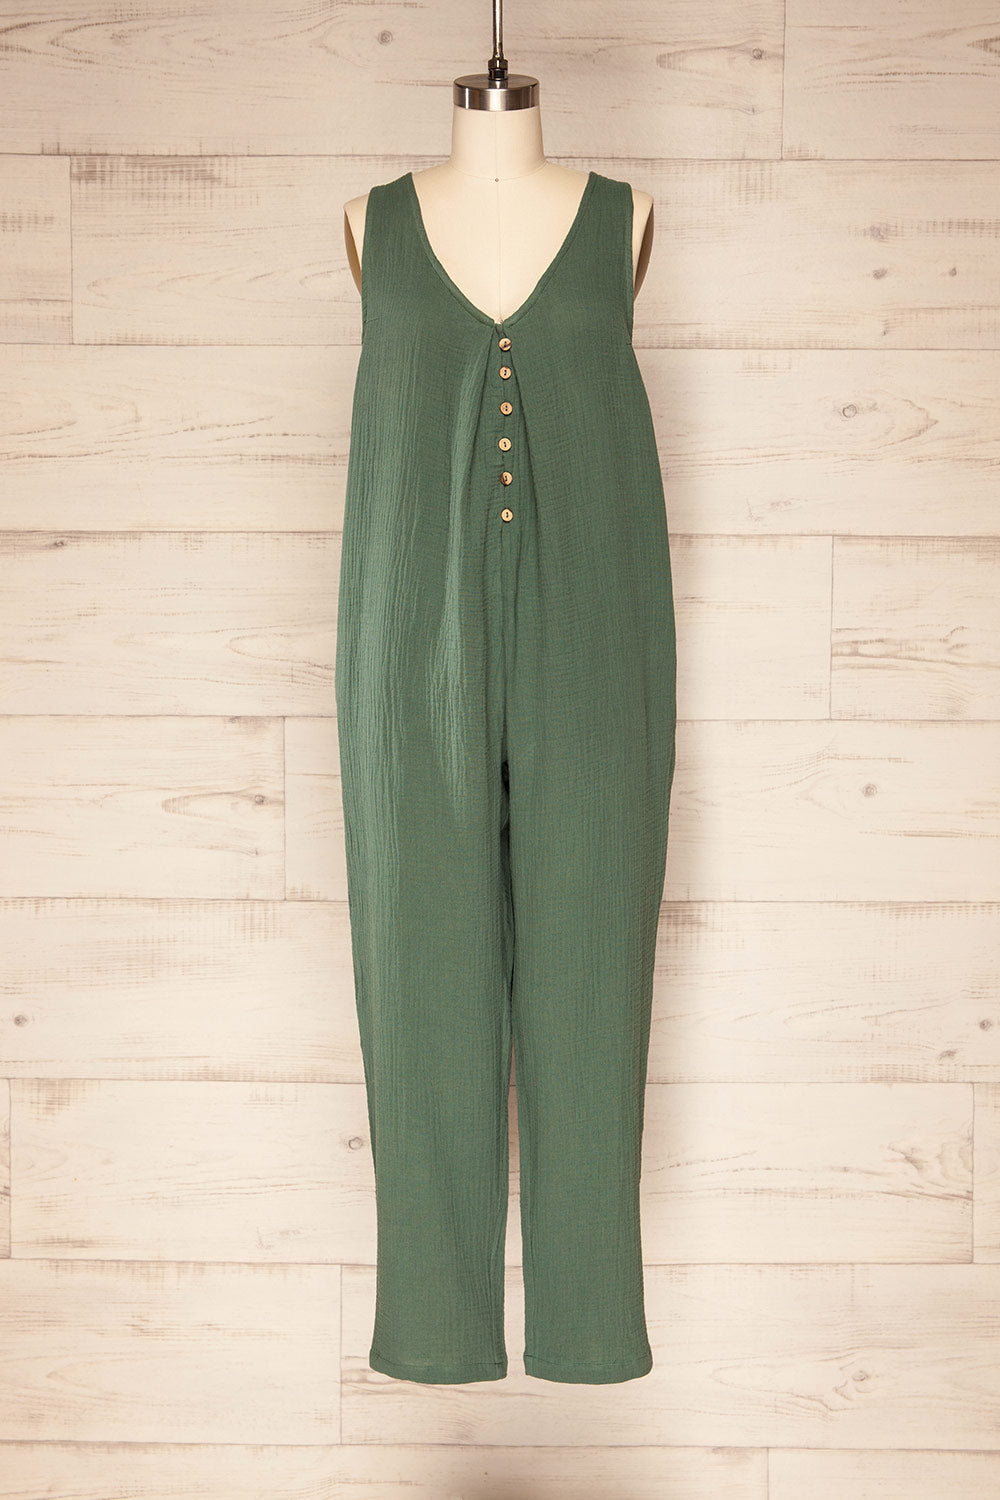 Miass Green Sleeveless Button-Up Jumpsuit  | La petite garçonne front view 